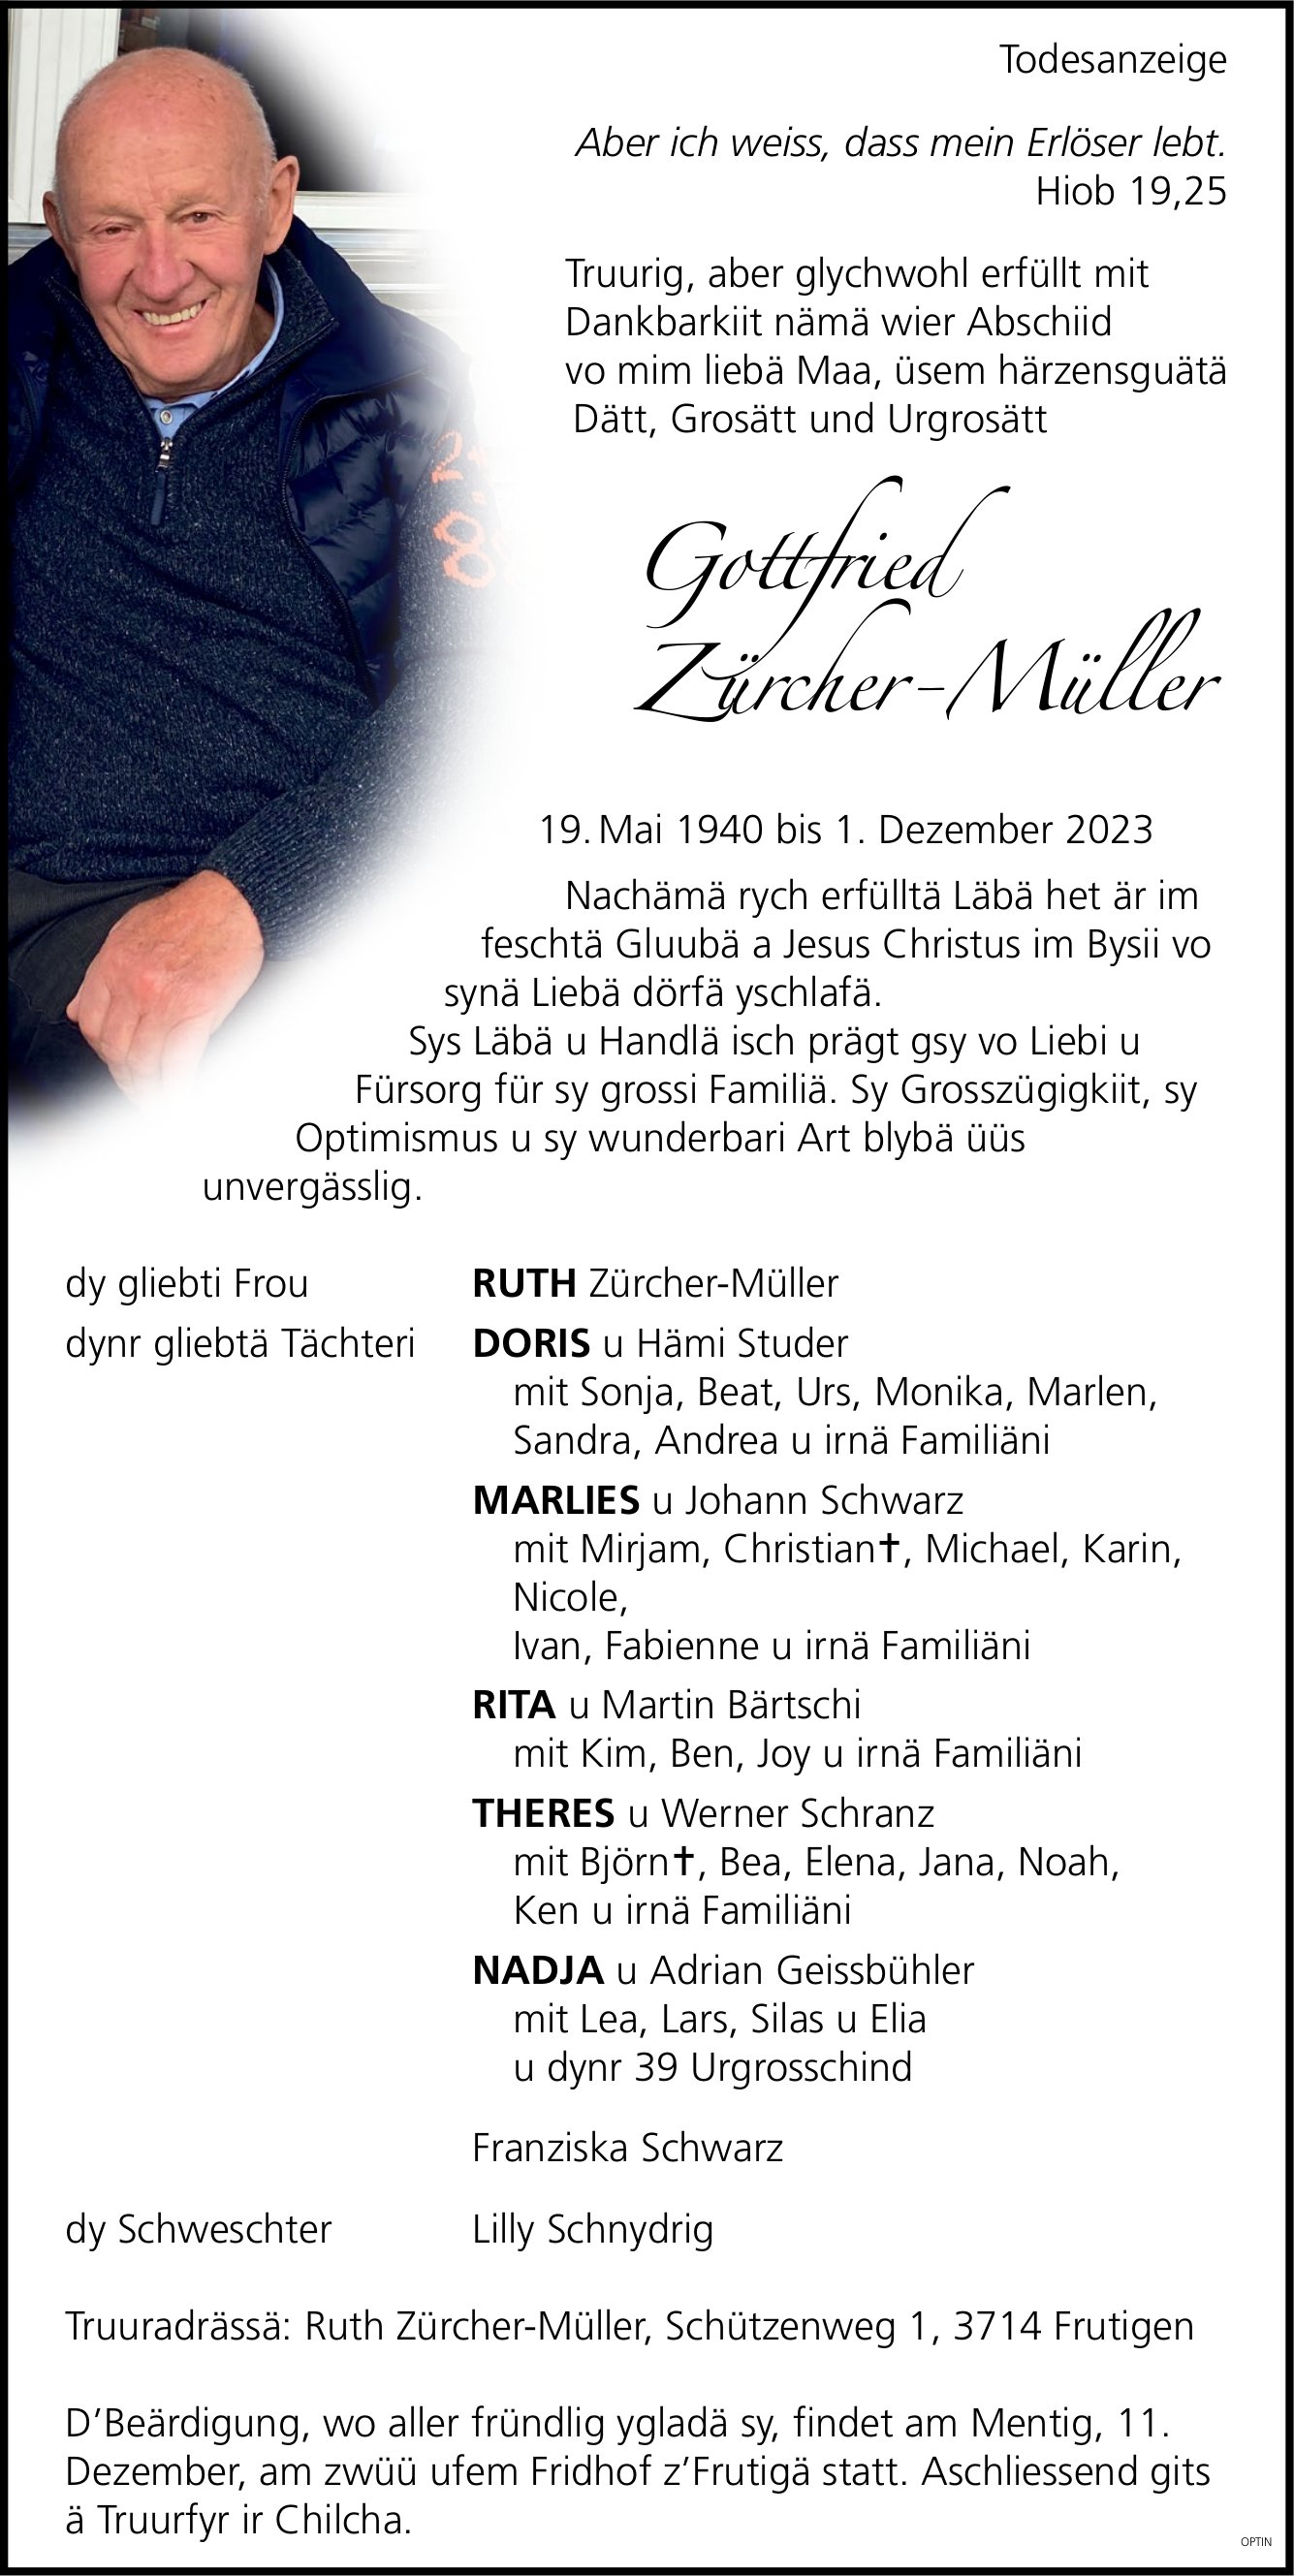 Zürcher-Müller Gottfried, Dezember 2023 / TA